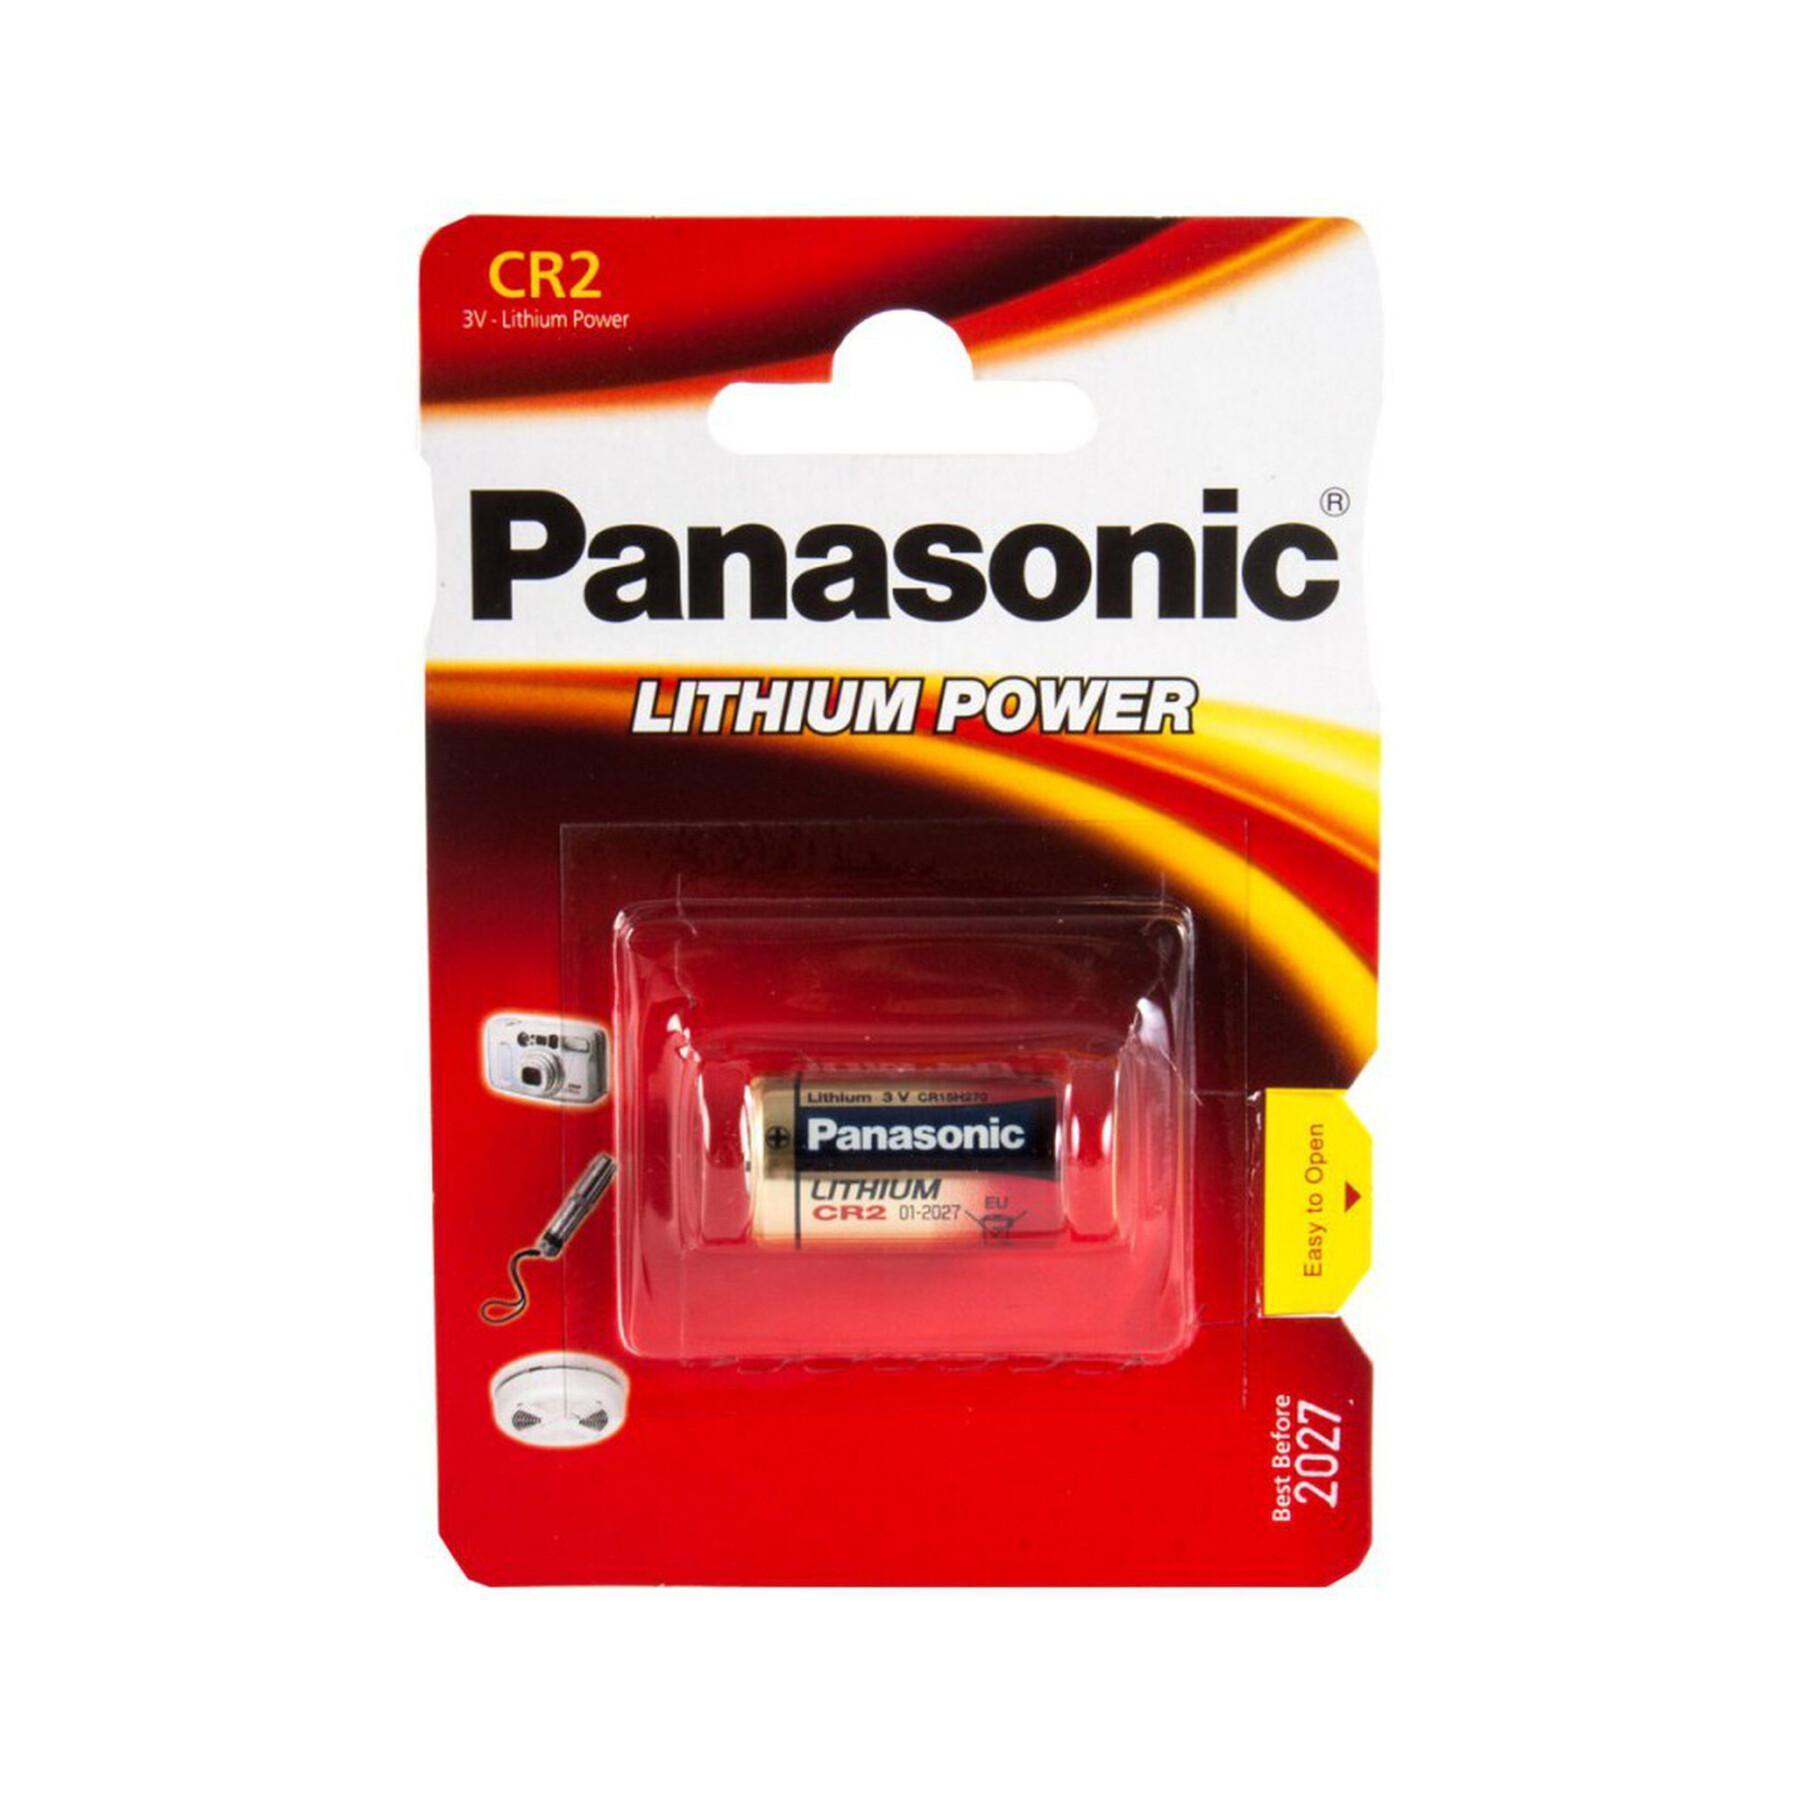 Panasonic-Batterie für Entfernungsmesser